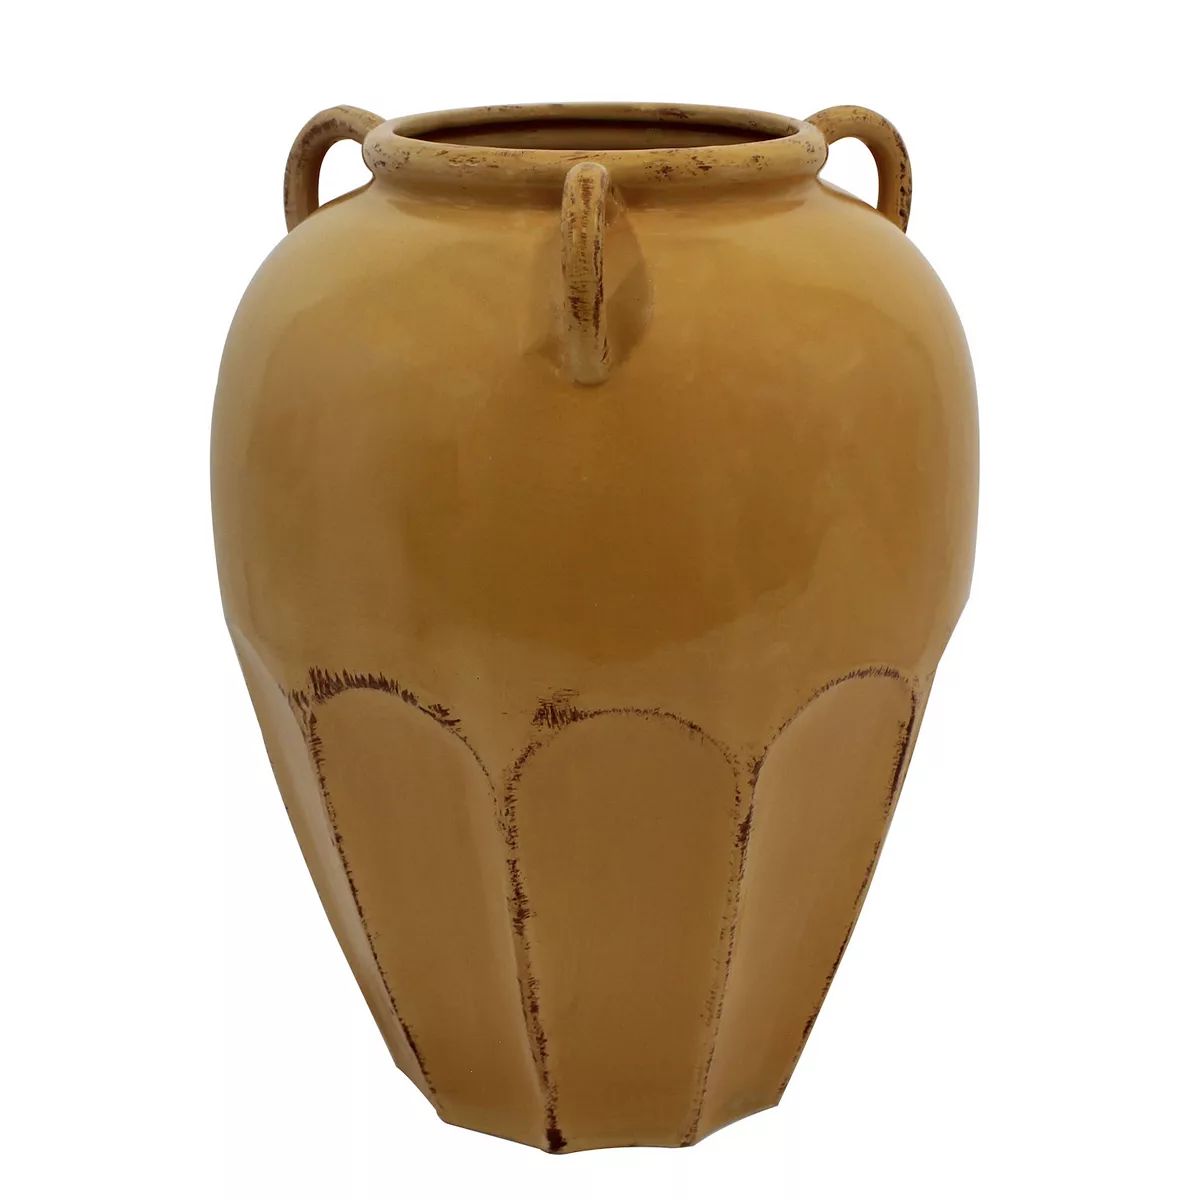 Sonoma Goods For Life® Ceramic Floor Vase | Kohl's